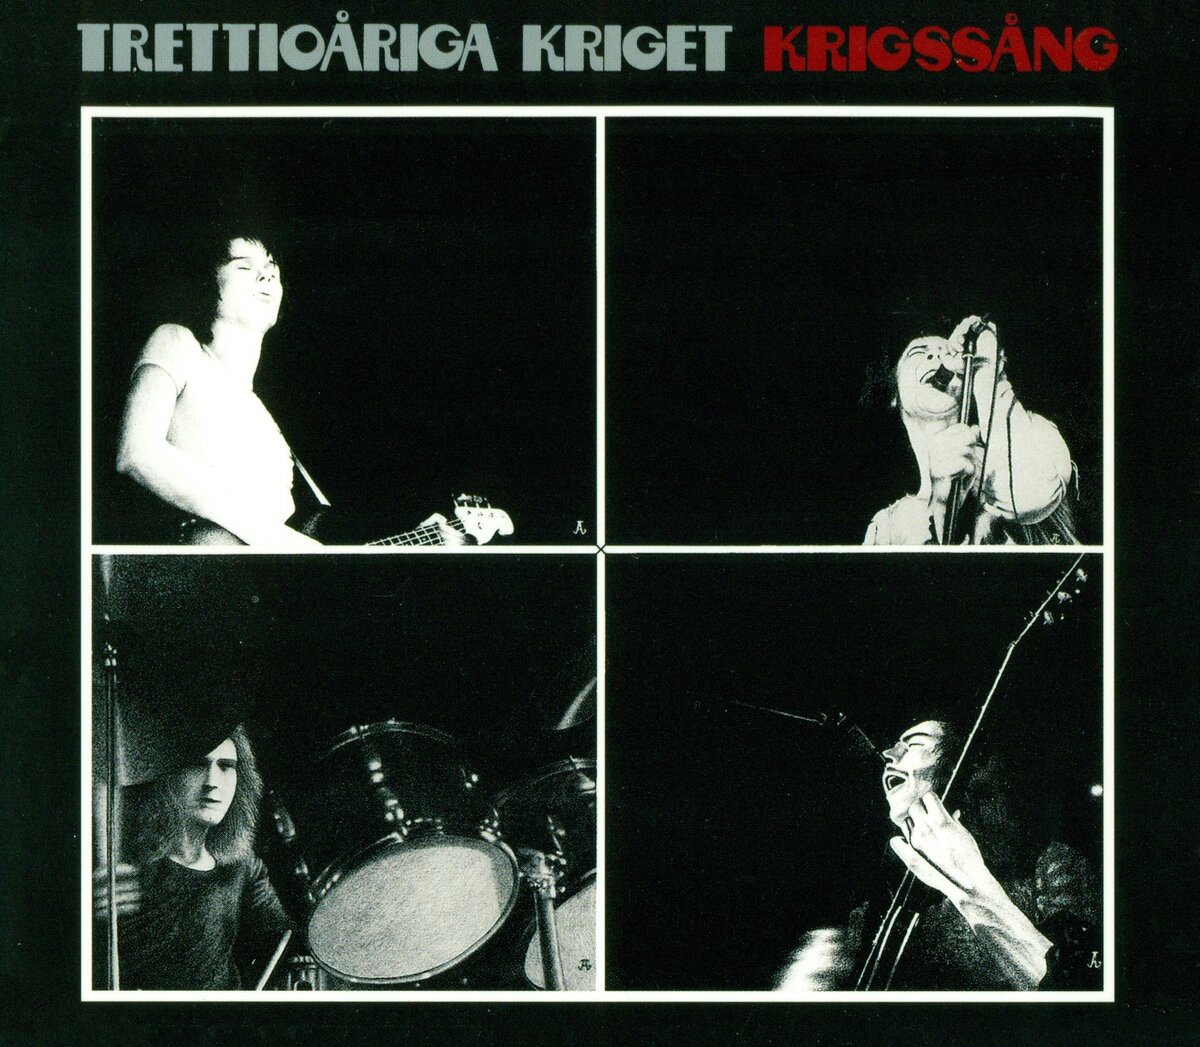 TRETTIOARIGA KRIGET - "Krigssång" (1976)
Songs / Tracks Listing: 1. Krigssång (4:33); 2. Metamorfoser (4:34); 3. Jag och jag och "jag" (3:20); 4. Murar (4:19); 5.